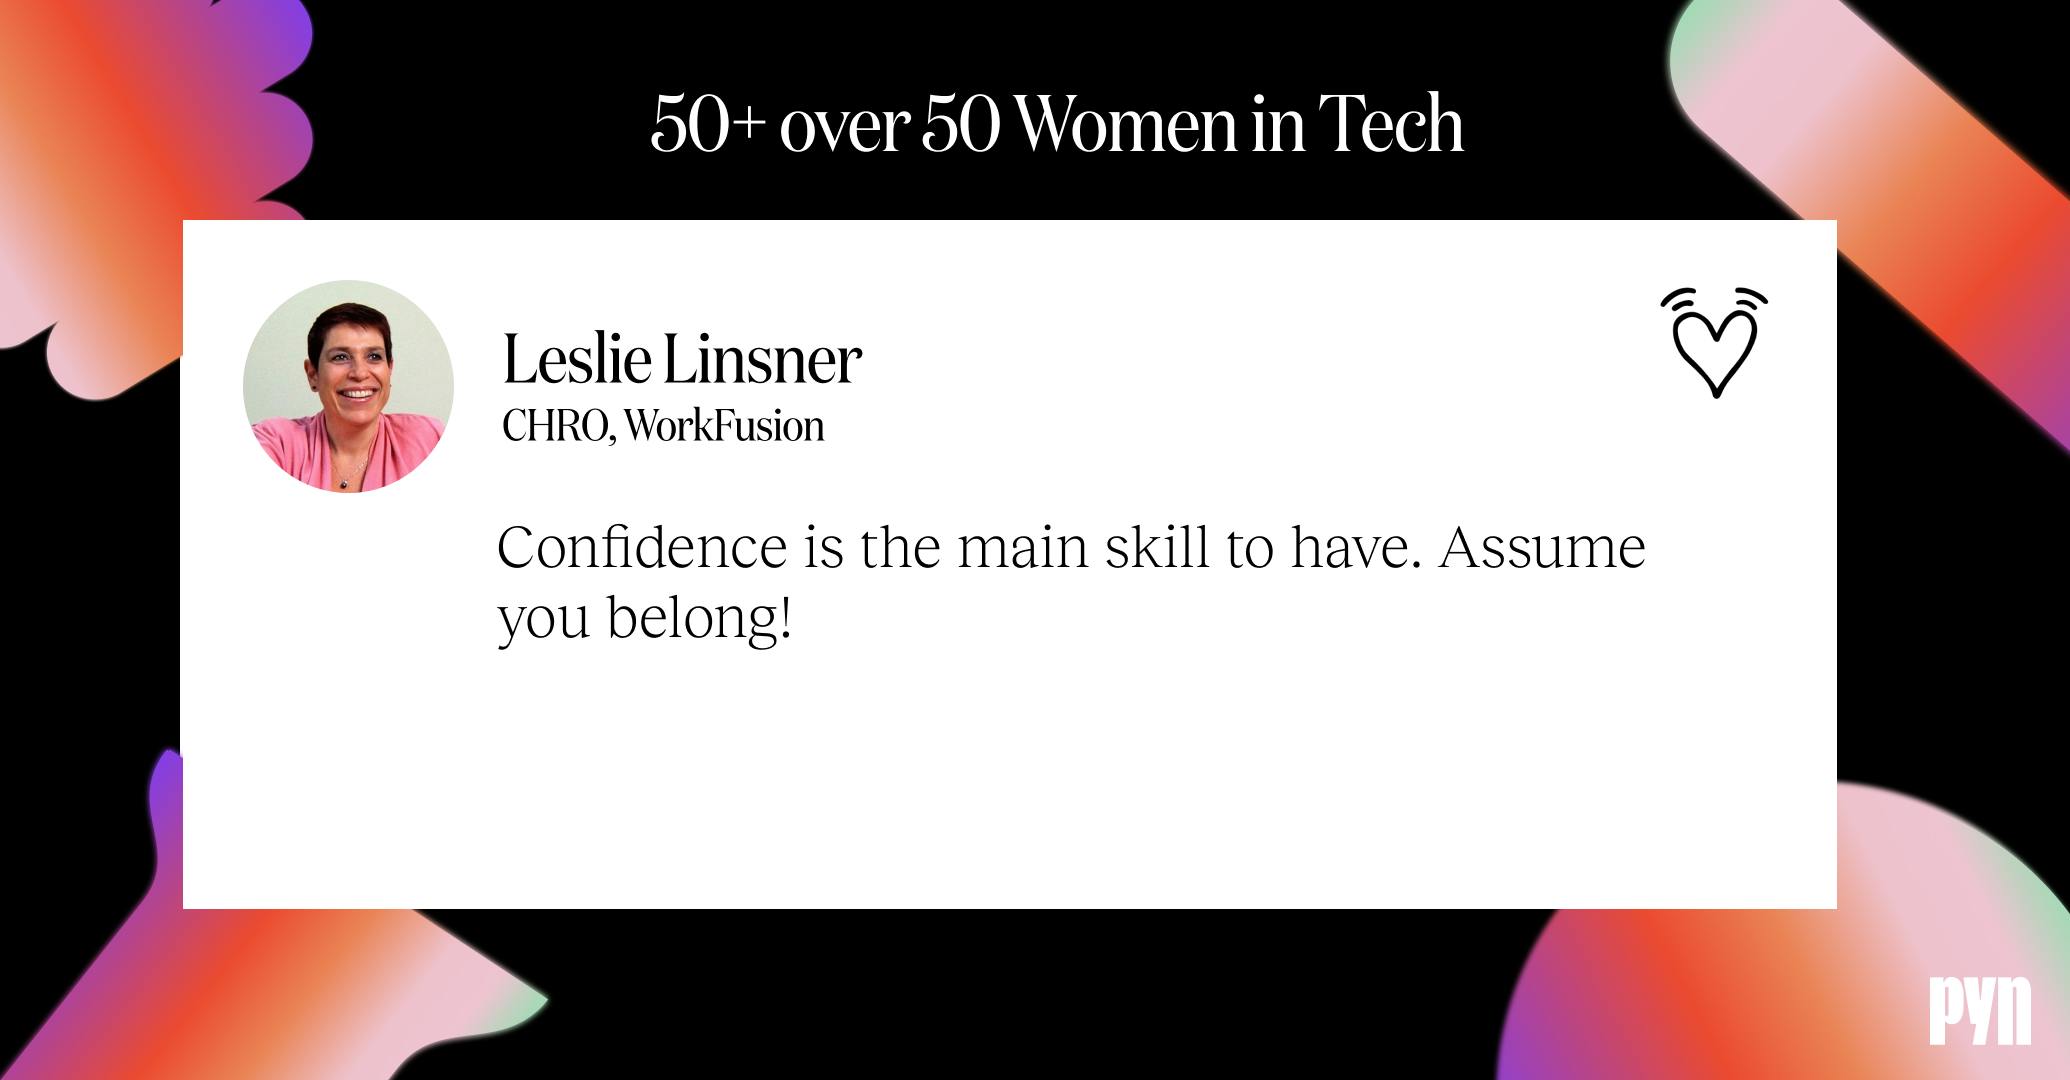 Leslie Linsner